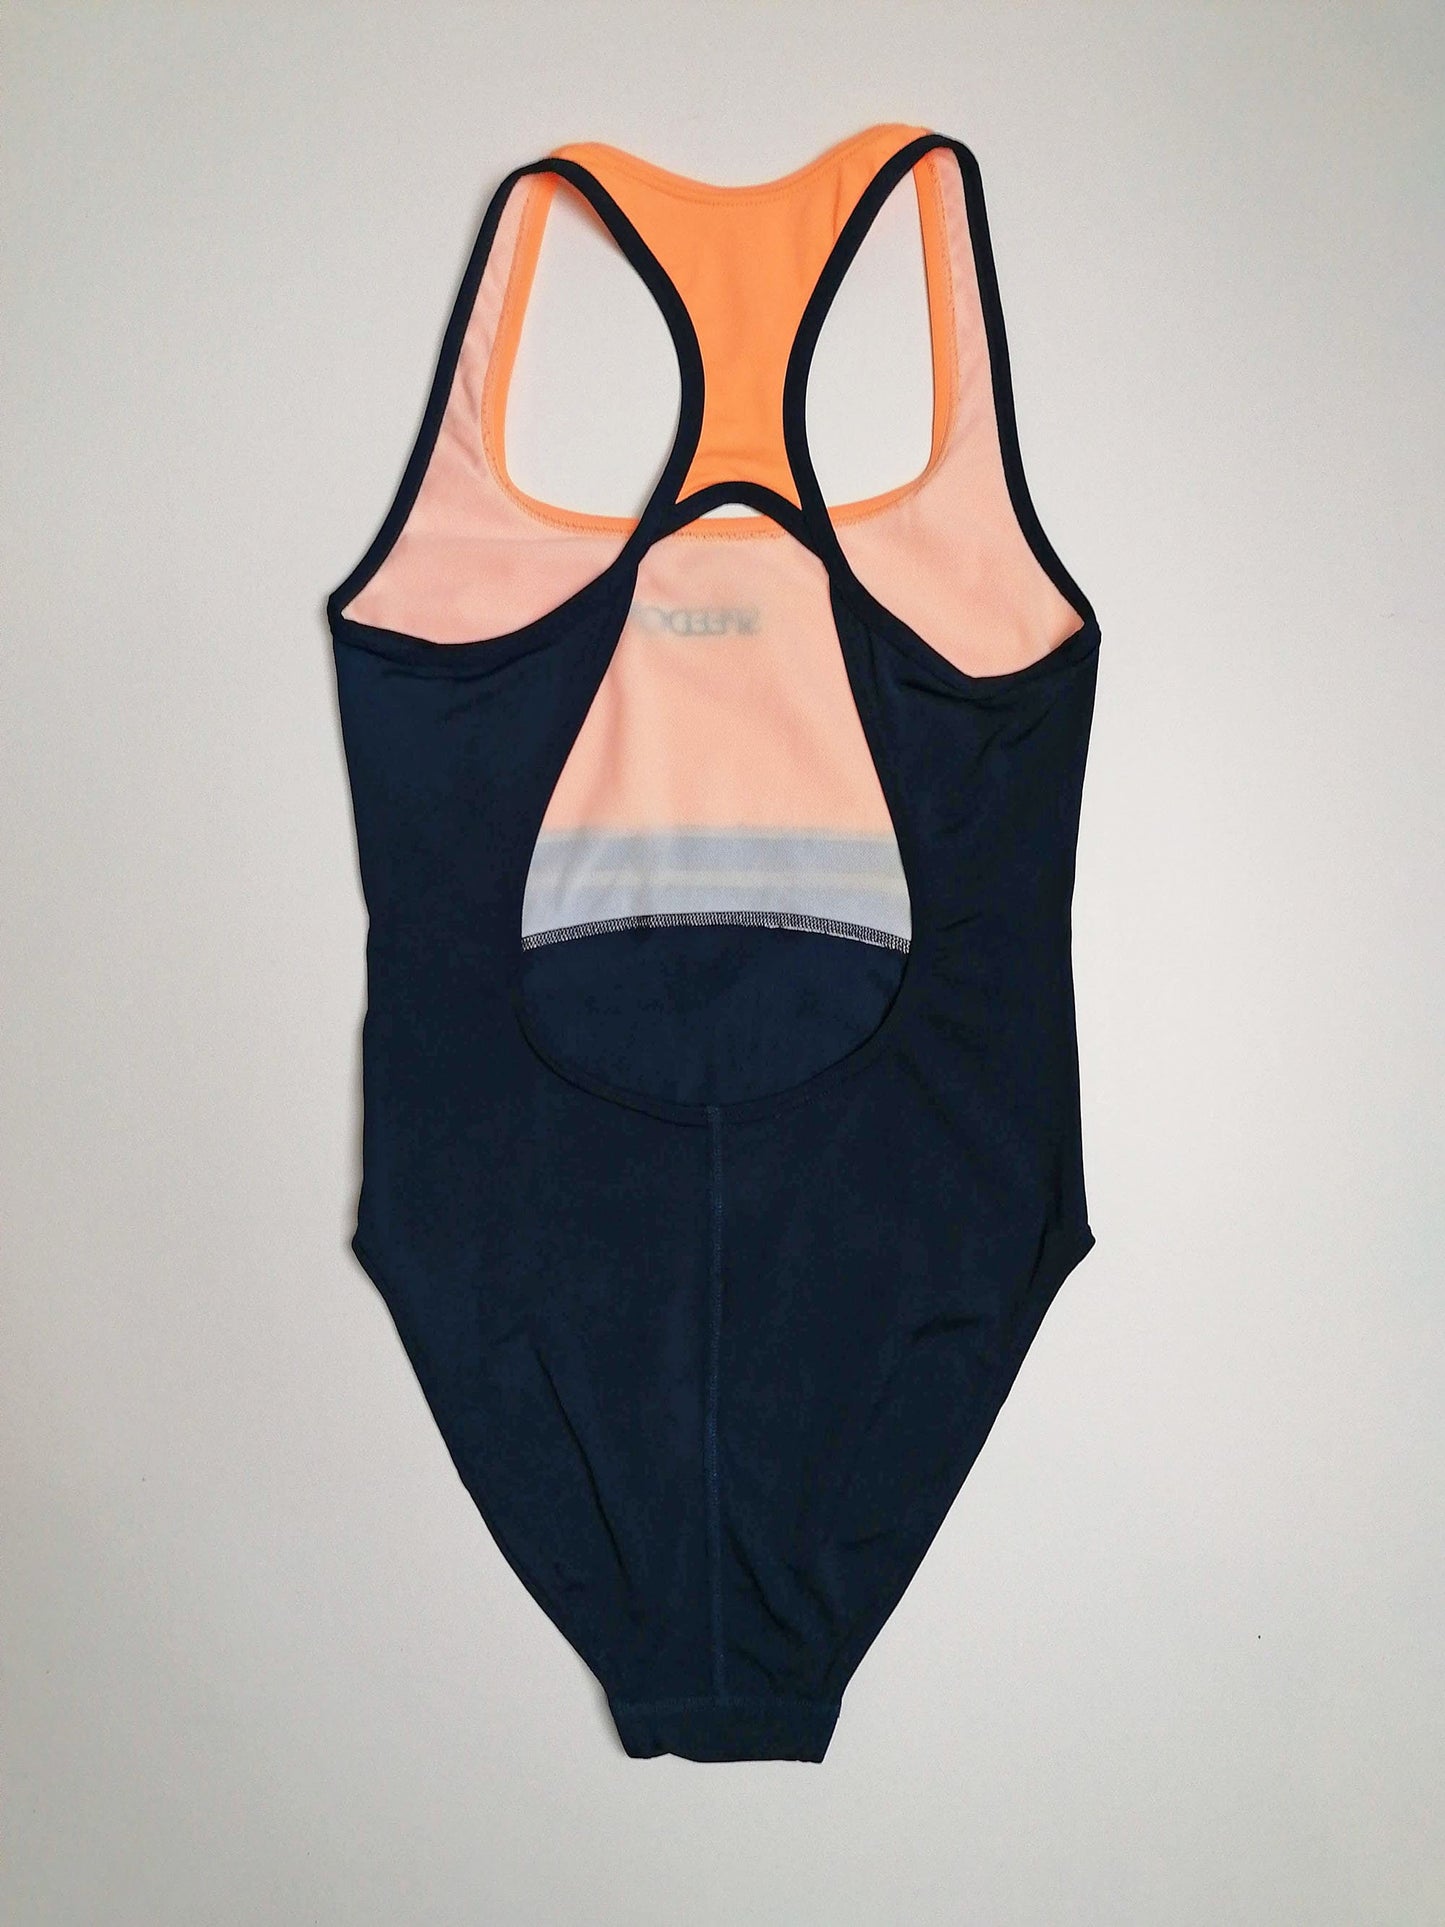 SPEEDO Retro Swimsuit - size S